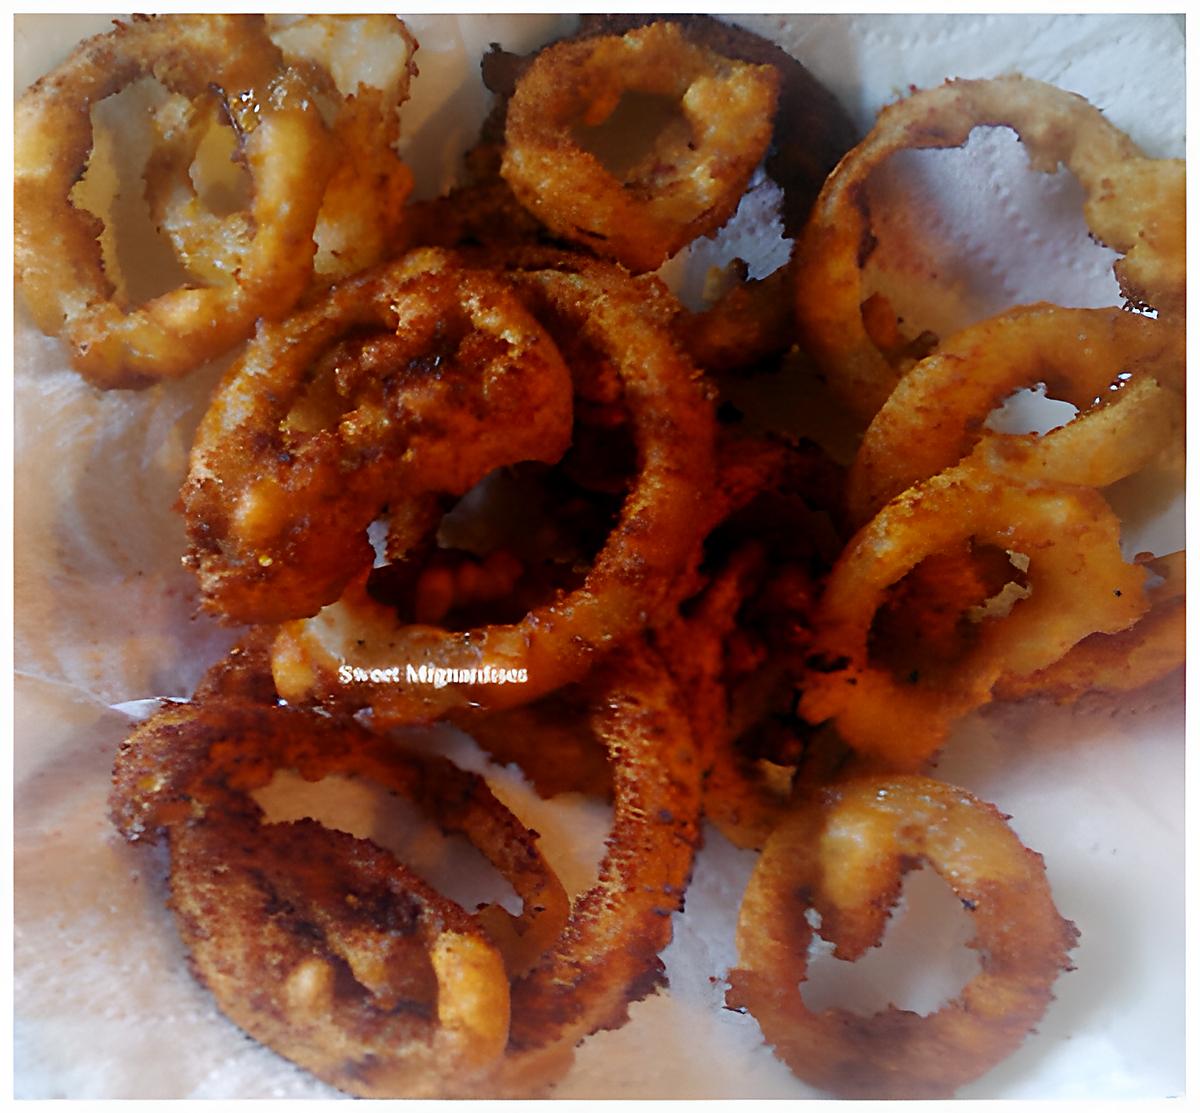 recette Onion Rings "Anneaux d'oignons frits"